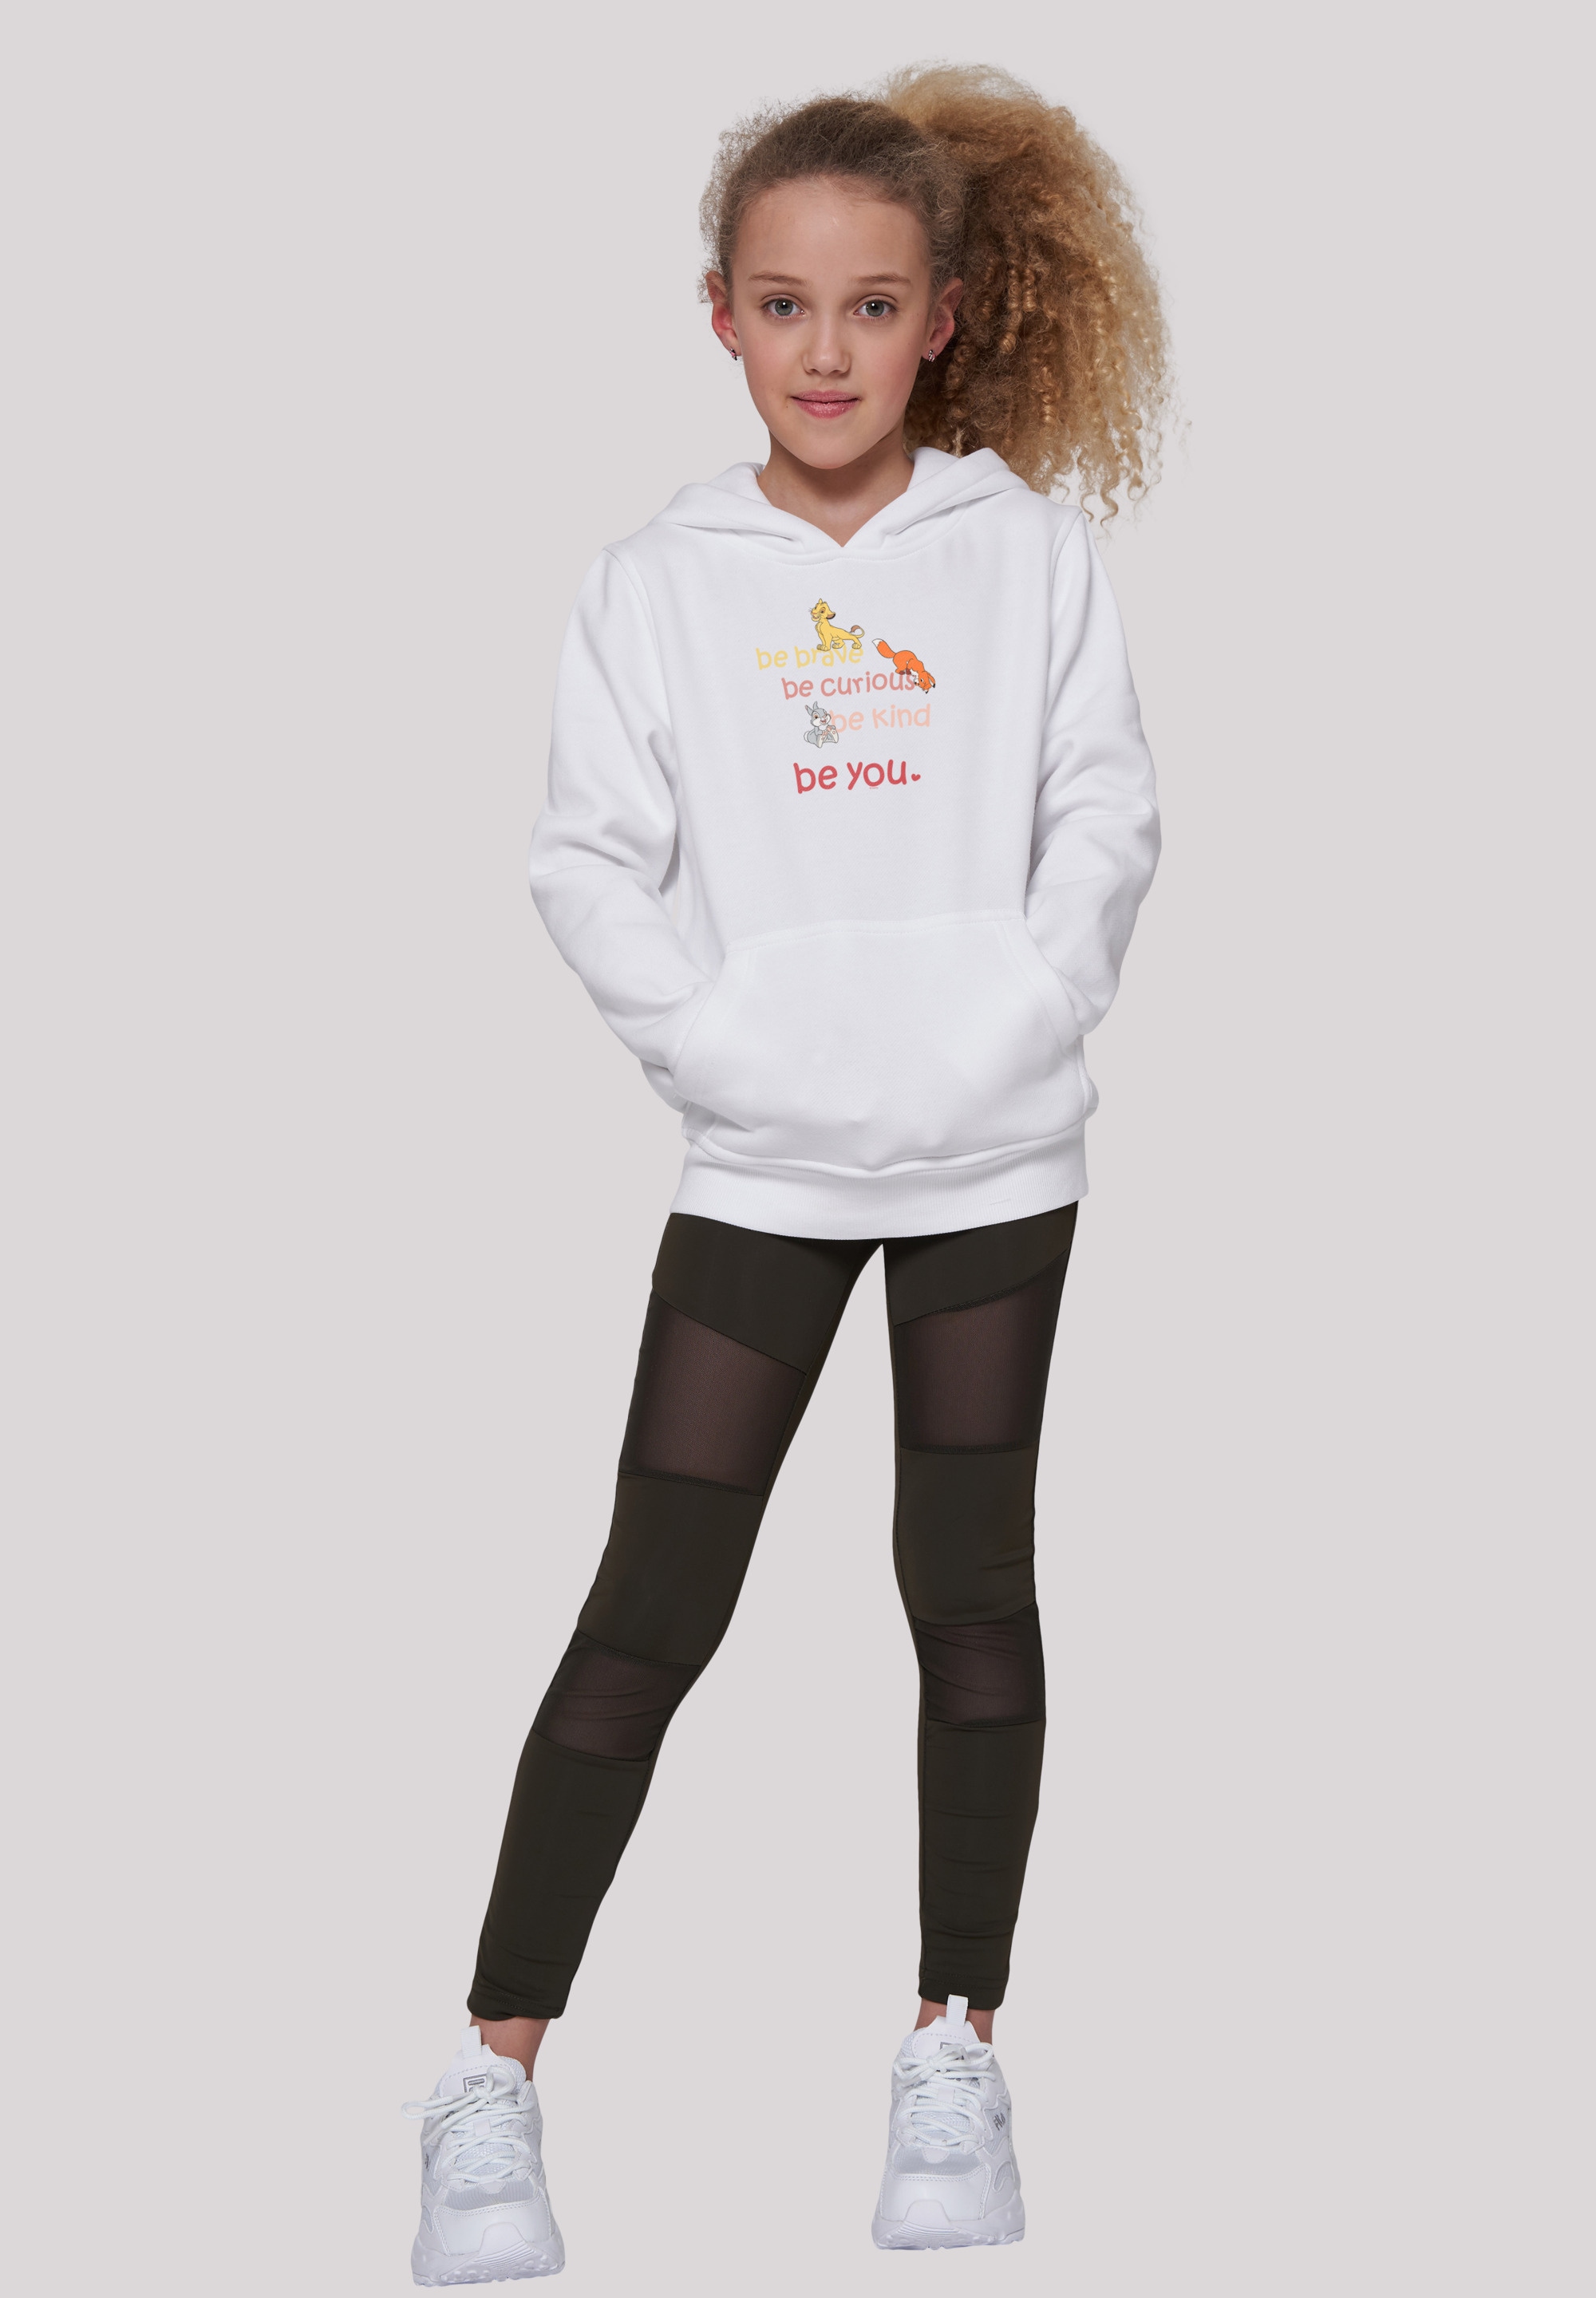 Kinder,Premium F4NT4STIC Unisex bestellen online | Merch,Jungen,Mädchen,Bedruckt Sweatshirt Be Brave BAUR Curious«, »Disney Be